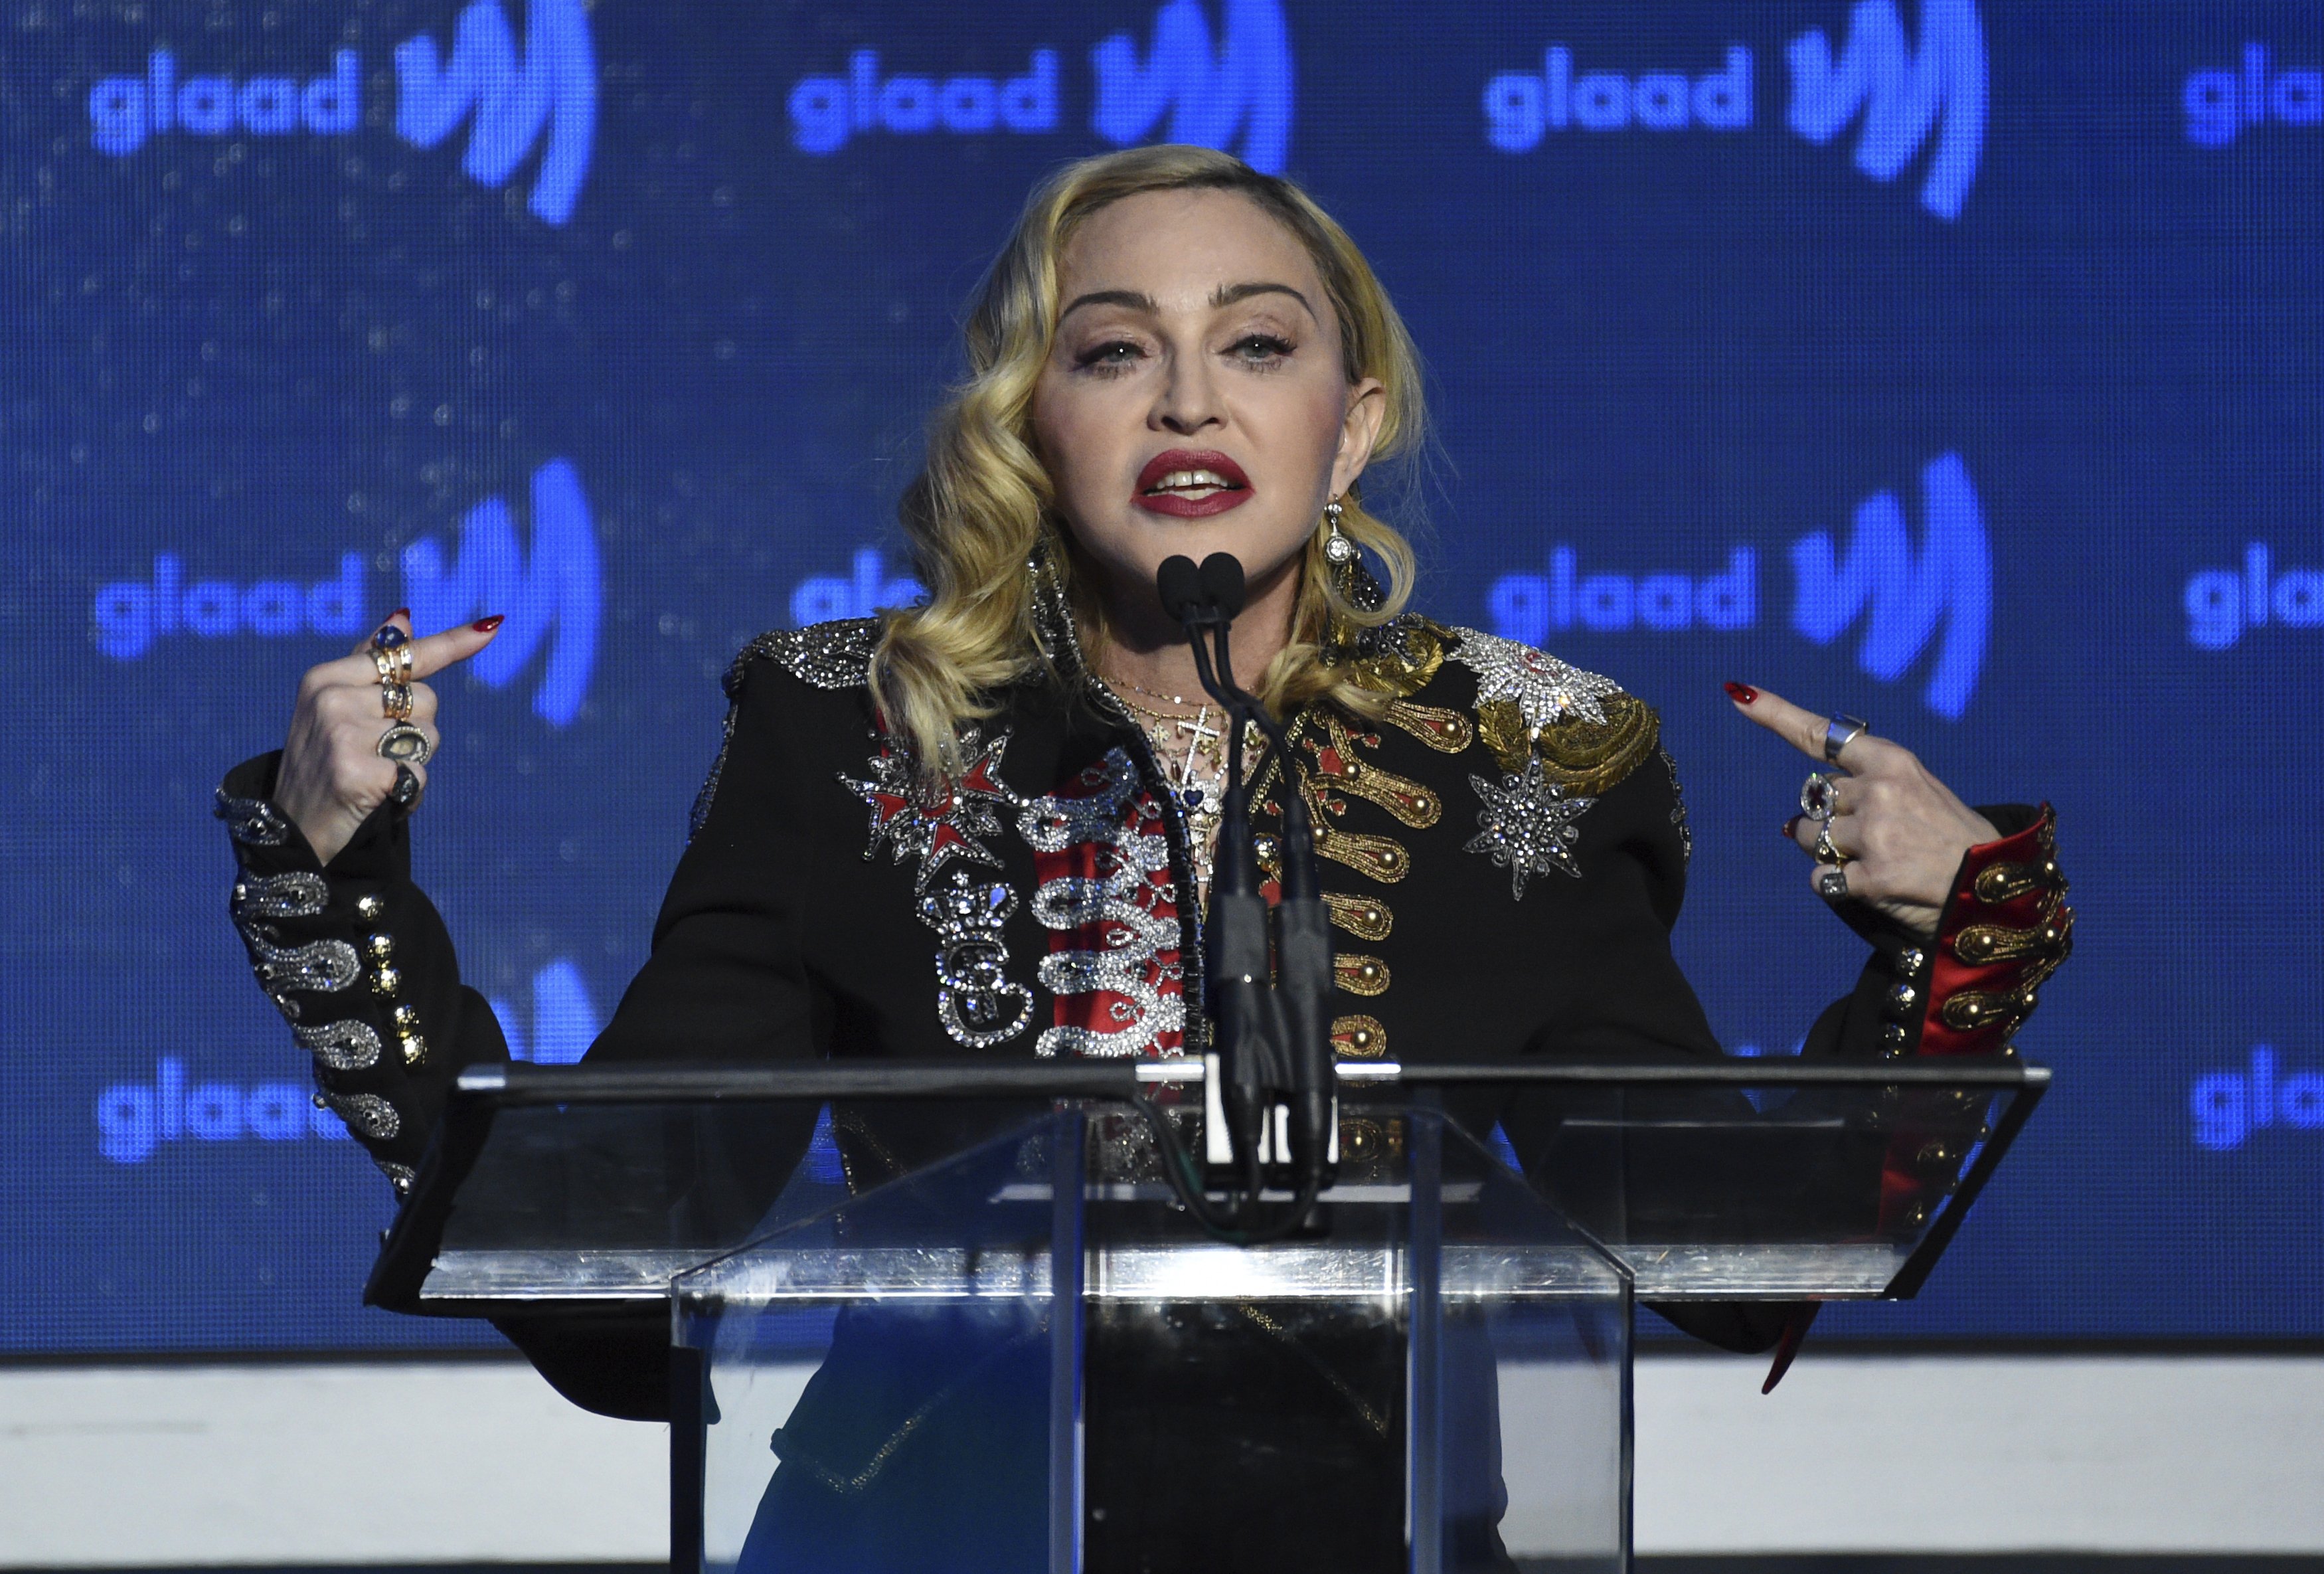 Madonna ja no és així: s'opera la cara als 63 anys i està irreconeixible